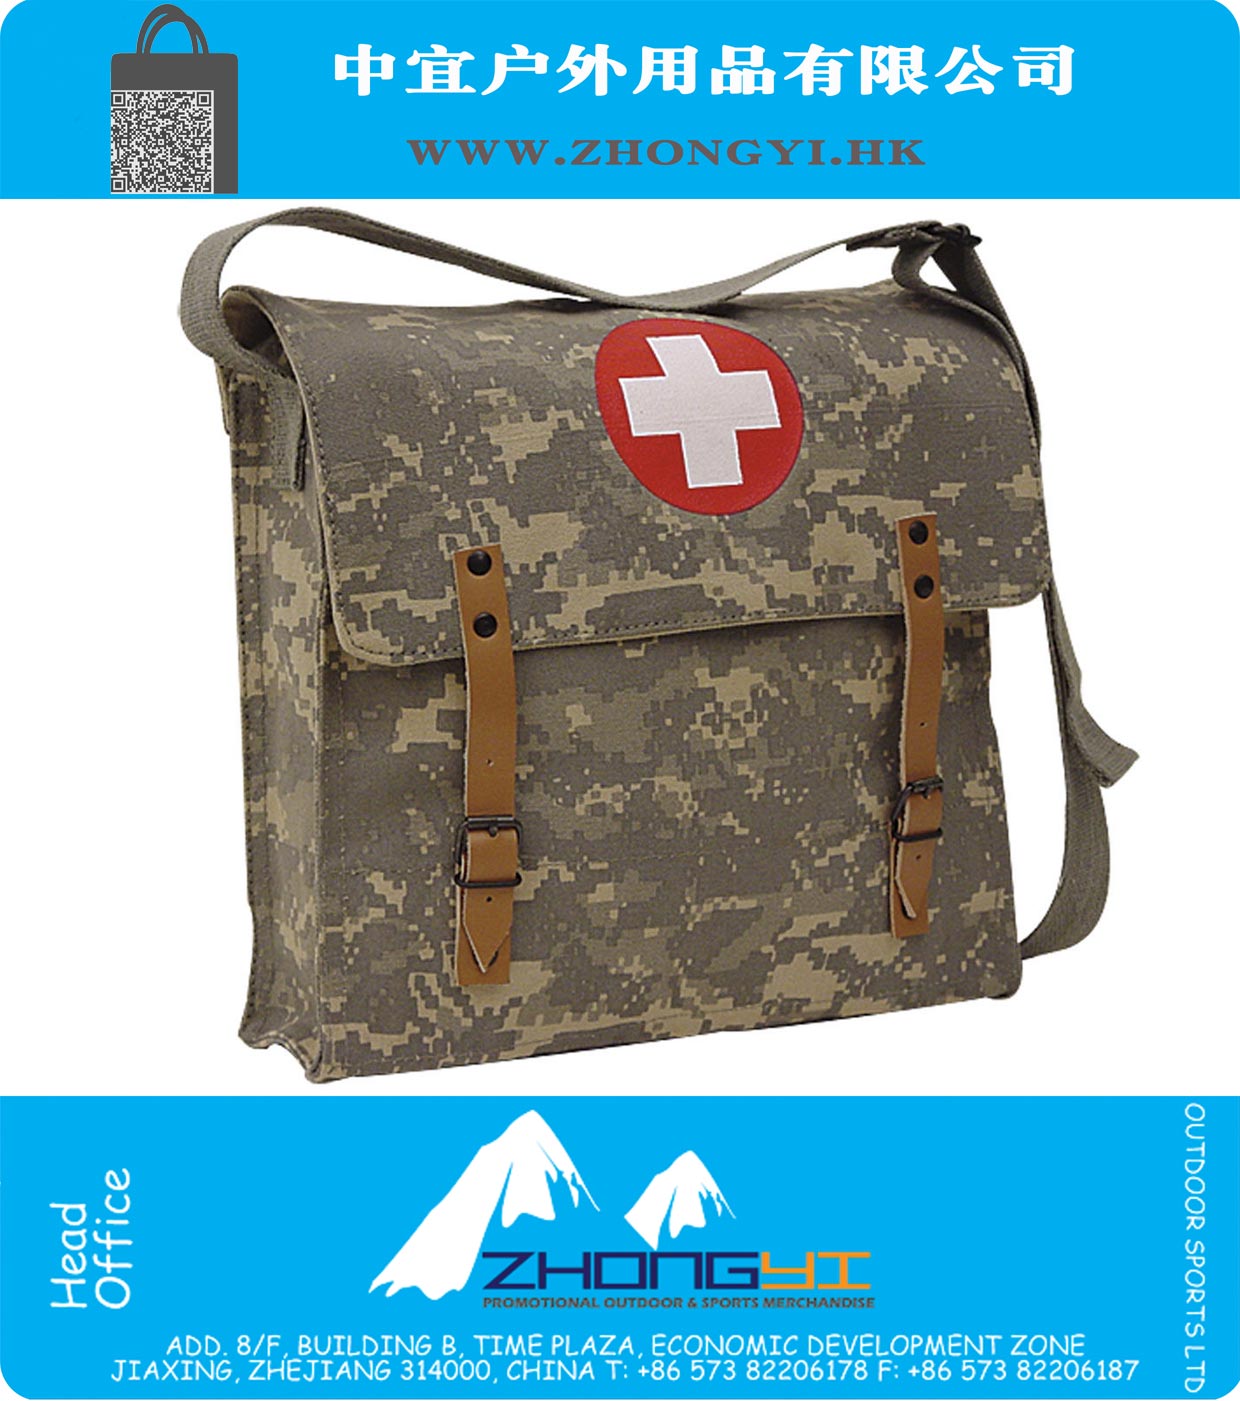 Военный Немецкий стиль Medic сумка ACU Digital Emergency Красный Крест Insignia сумка